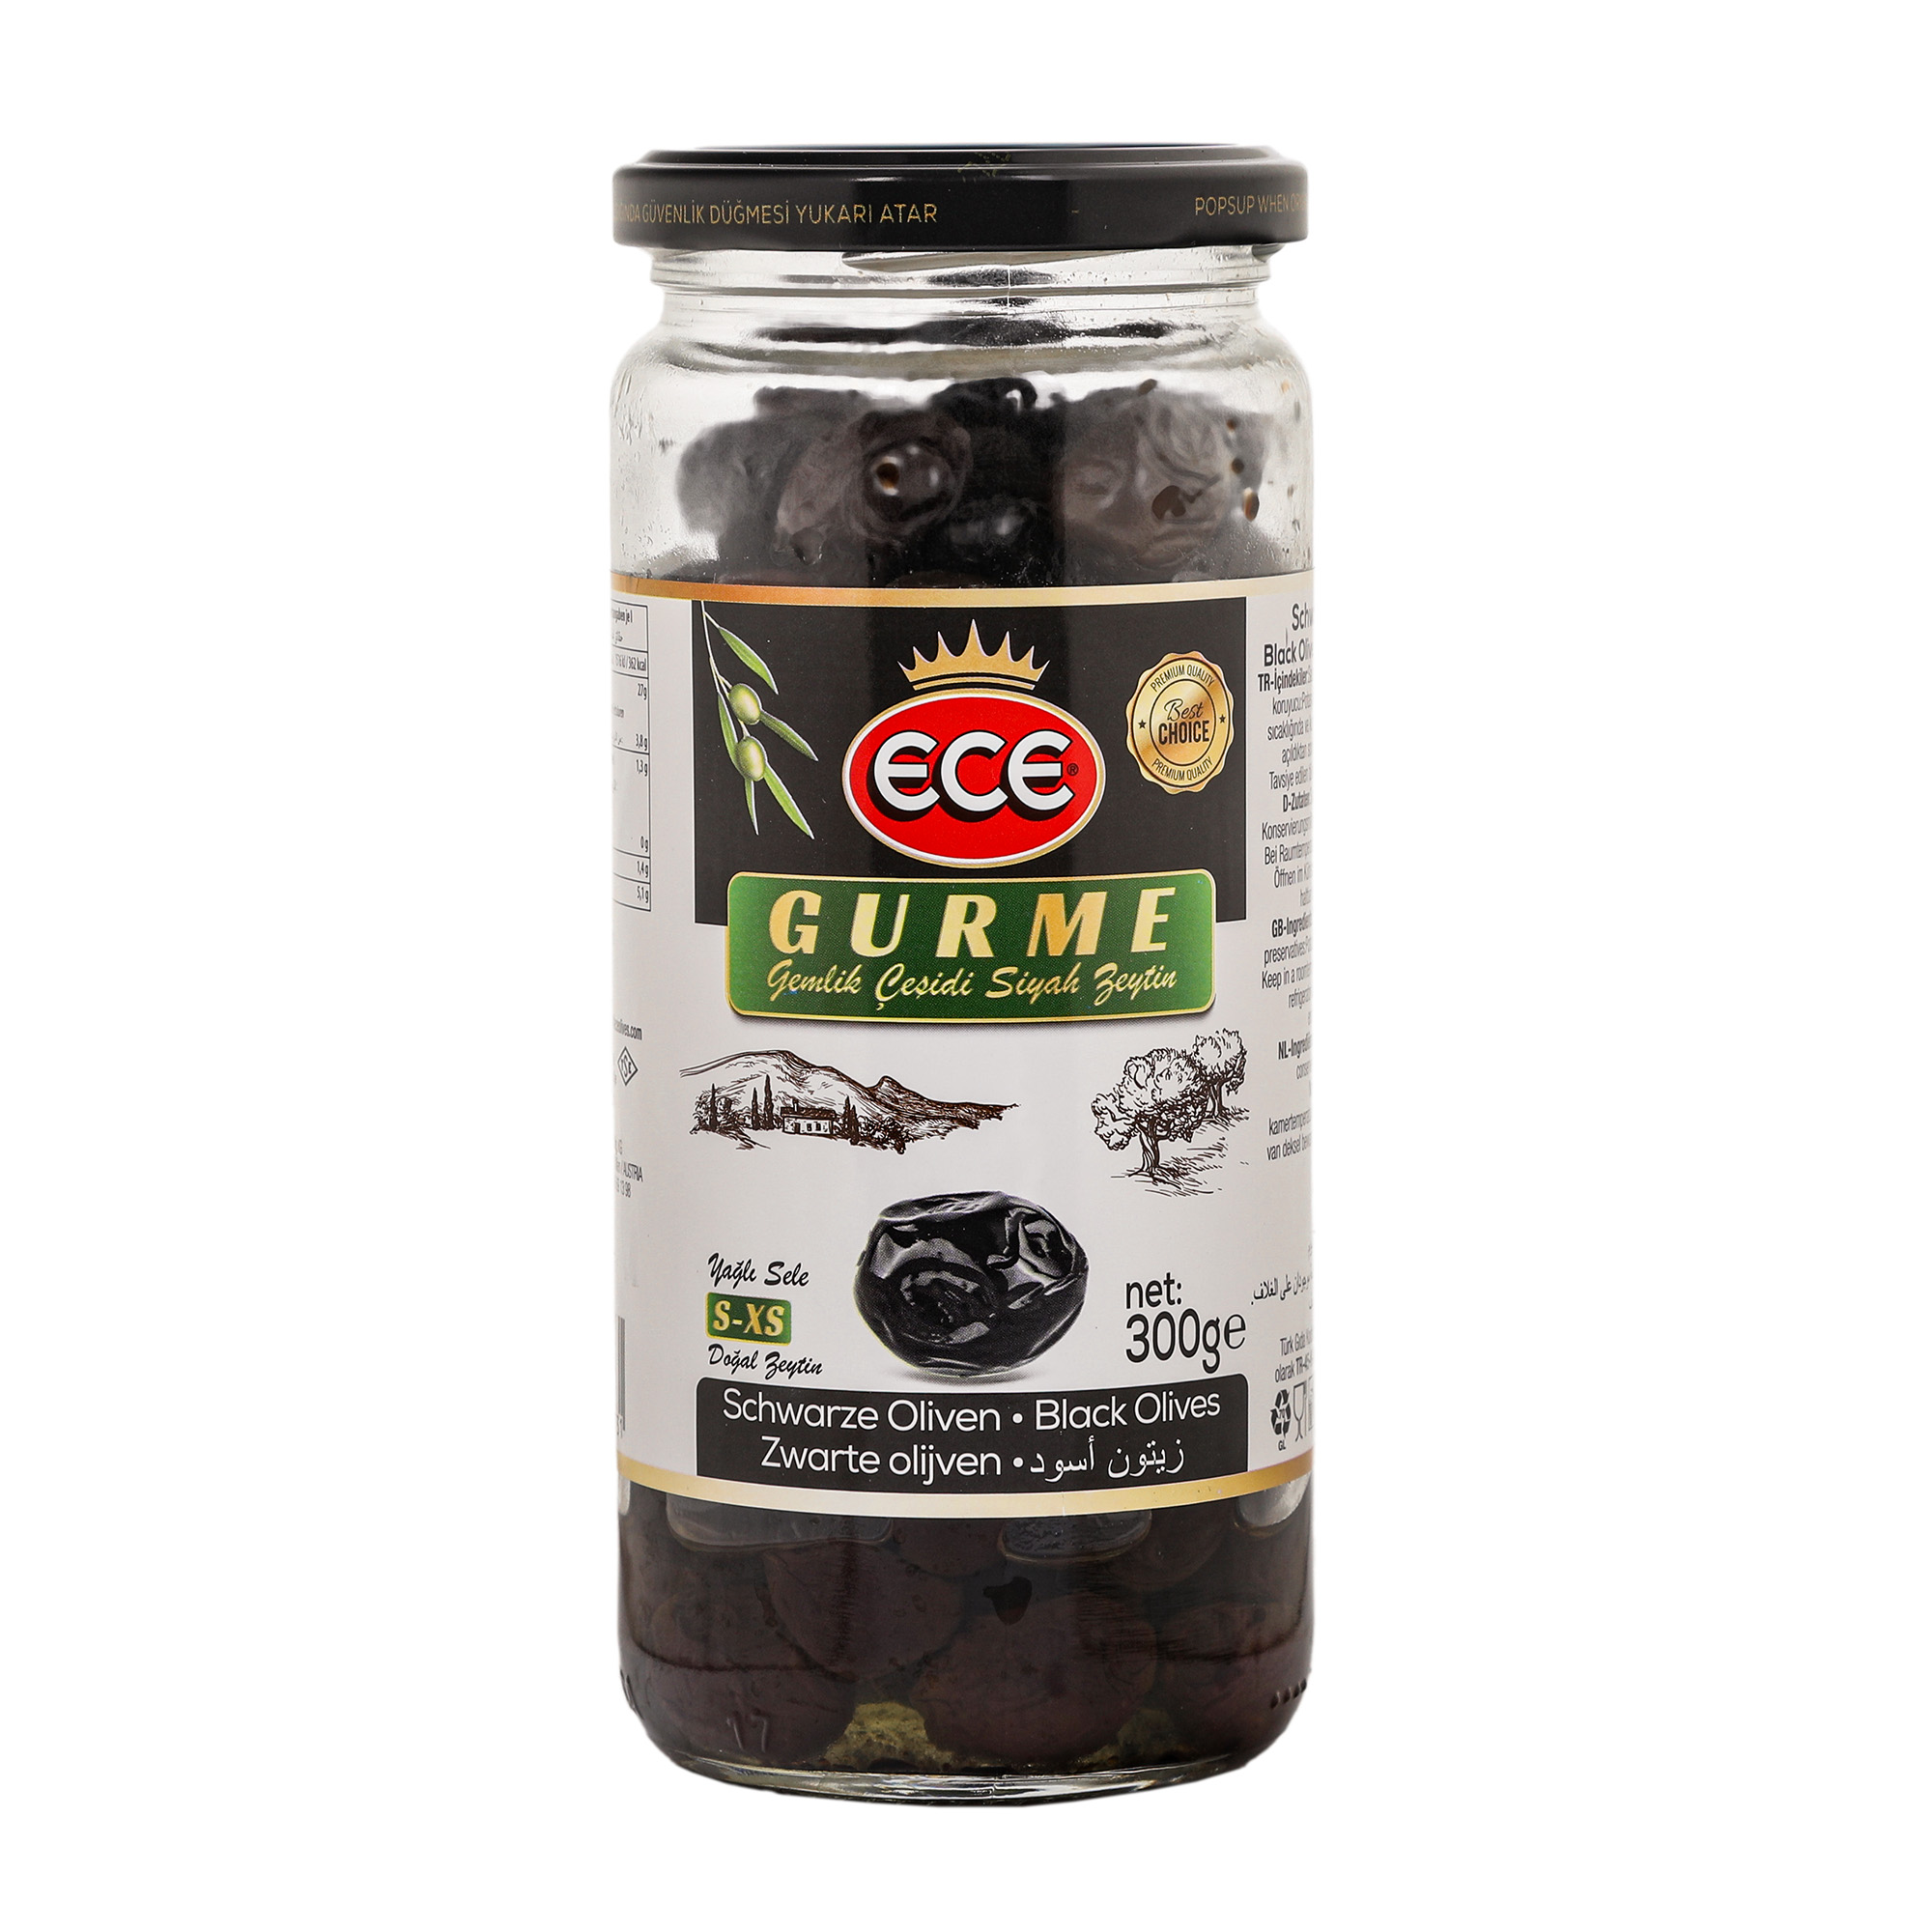 Оливки черные Ece Gurme в масле с косточкой, 300 г оливки itlv с косточкой 314 мл